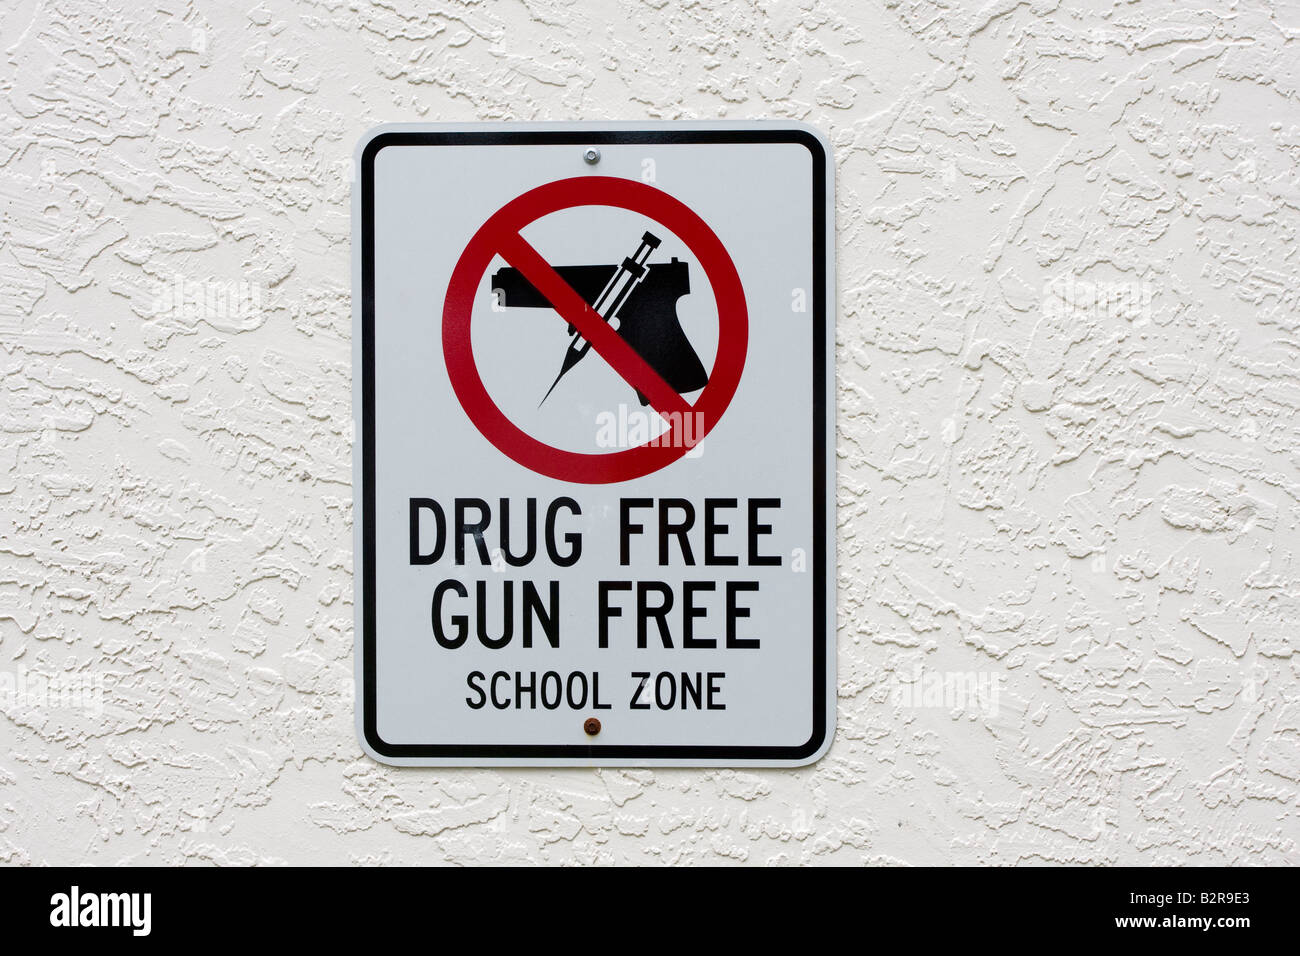 Affiche de la zone scolaire sans armes à feu et sans drogues avec arme à feu et aiguille dans le cercle rouge et clash au-dessus du pistolet Banque D'Images